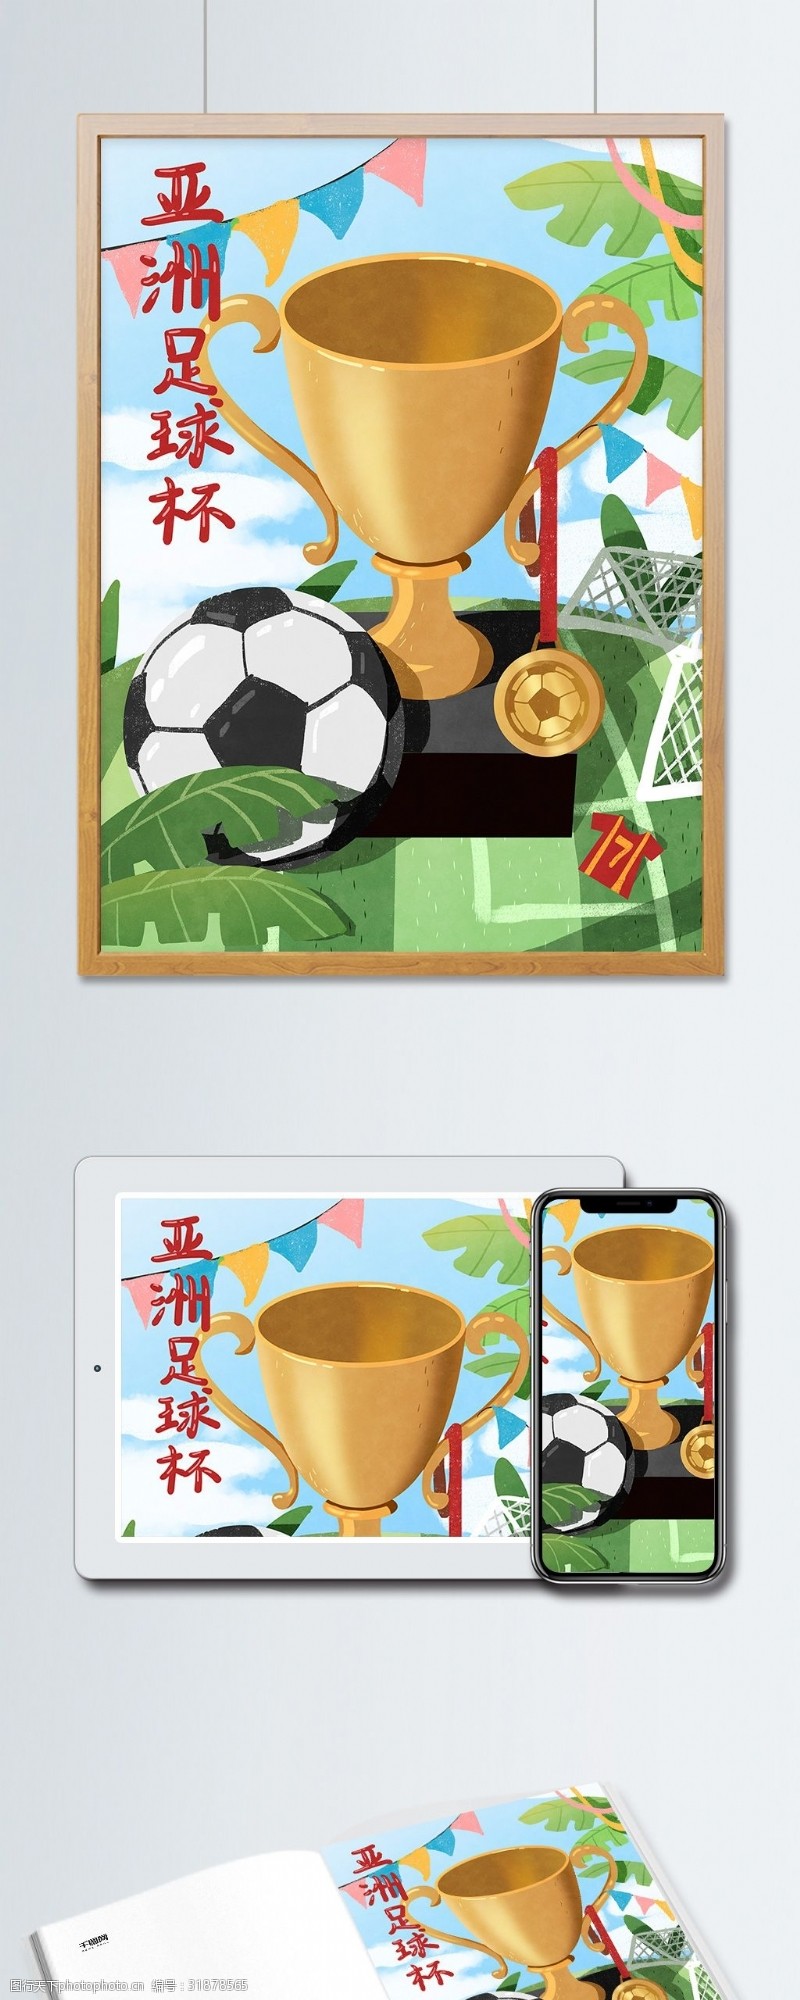 足球比赛奖杯亚洲足球杯足球奖杯宣传插画海报